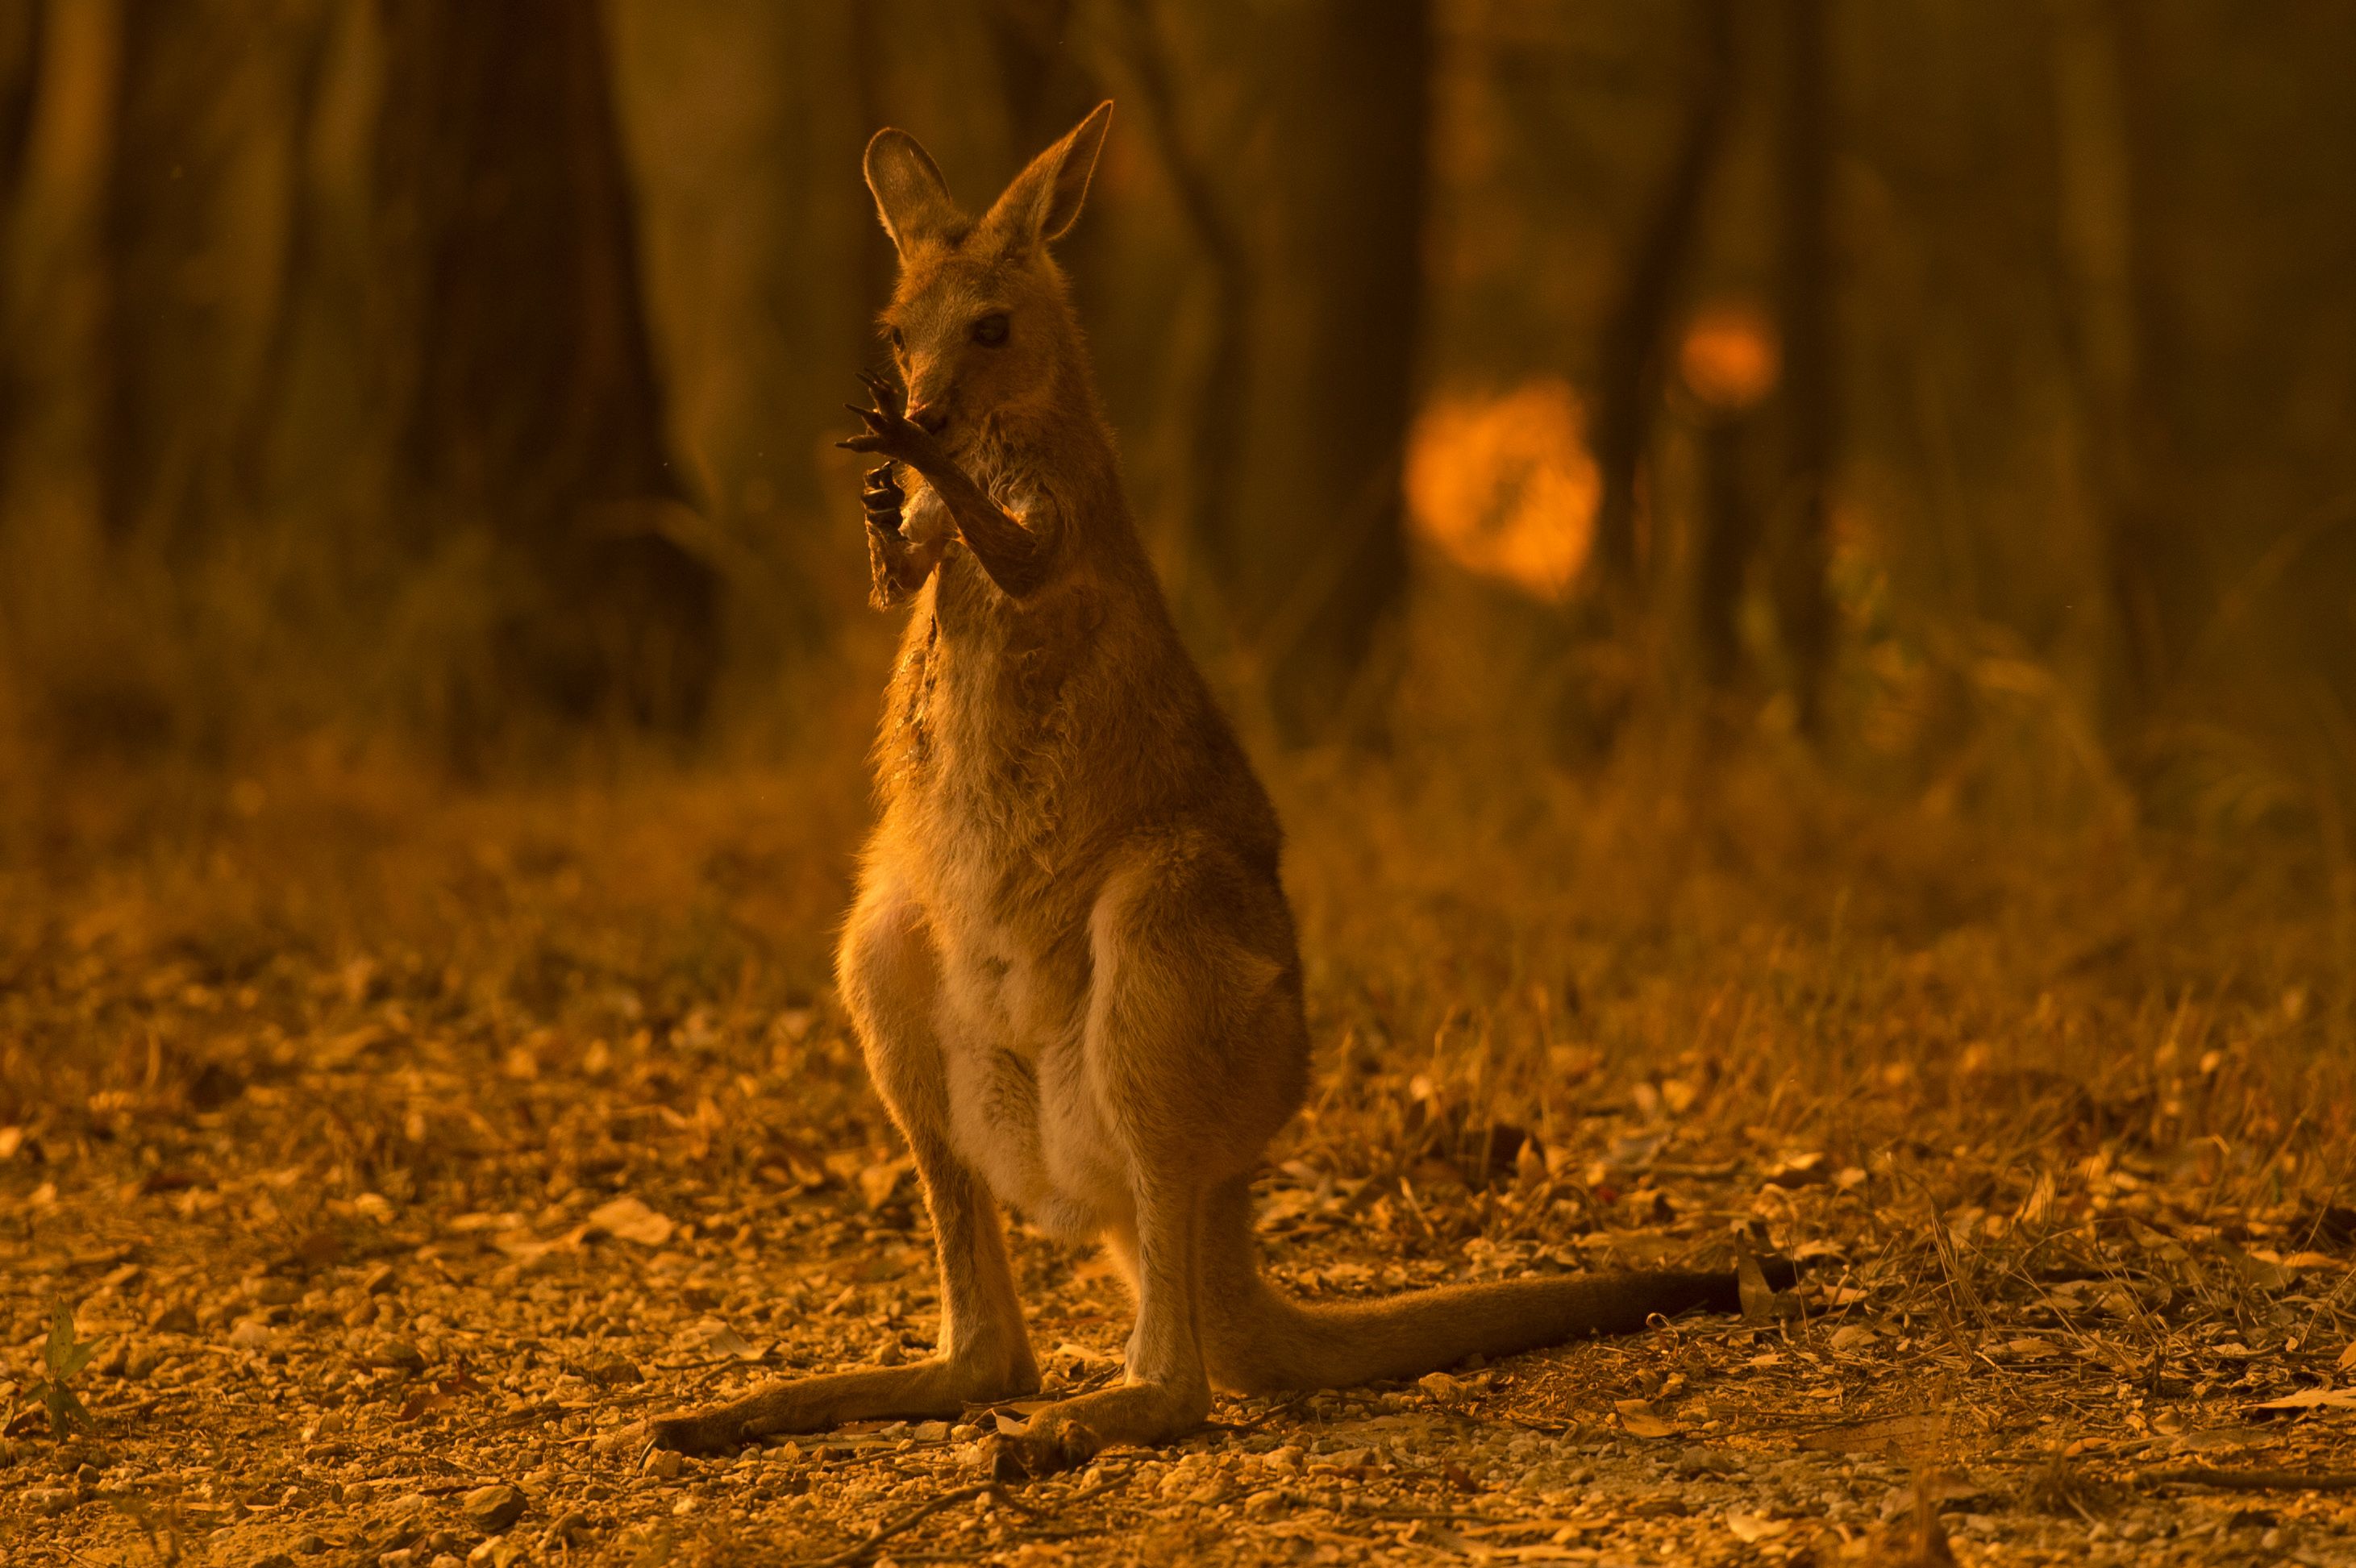 オーストラリア森林火災により、約4億8000万匹の動物が亡くなっていた